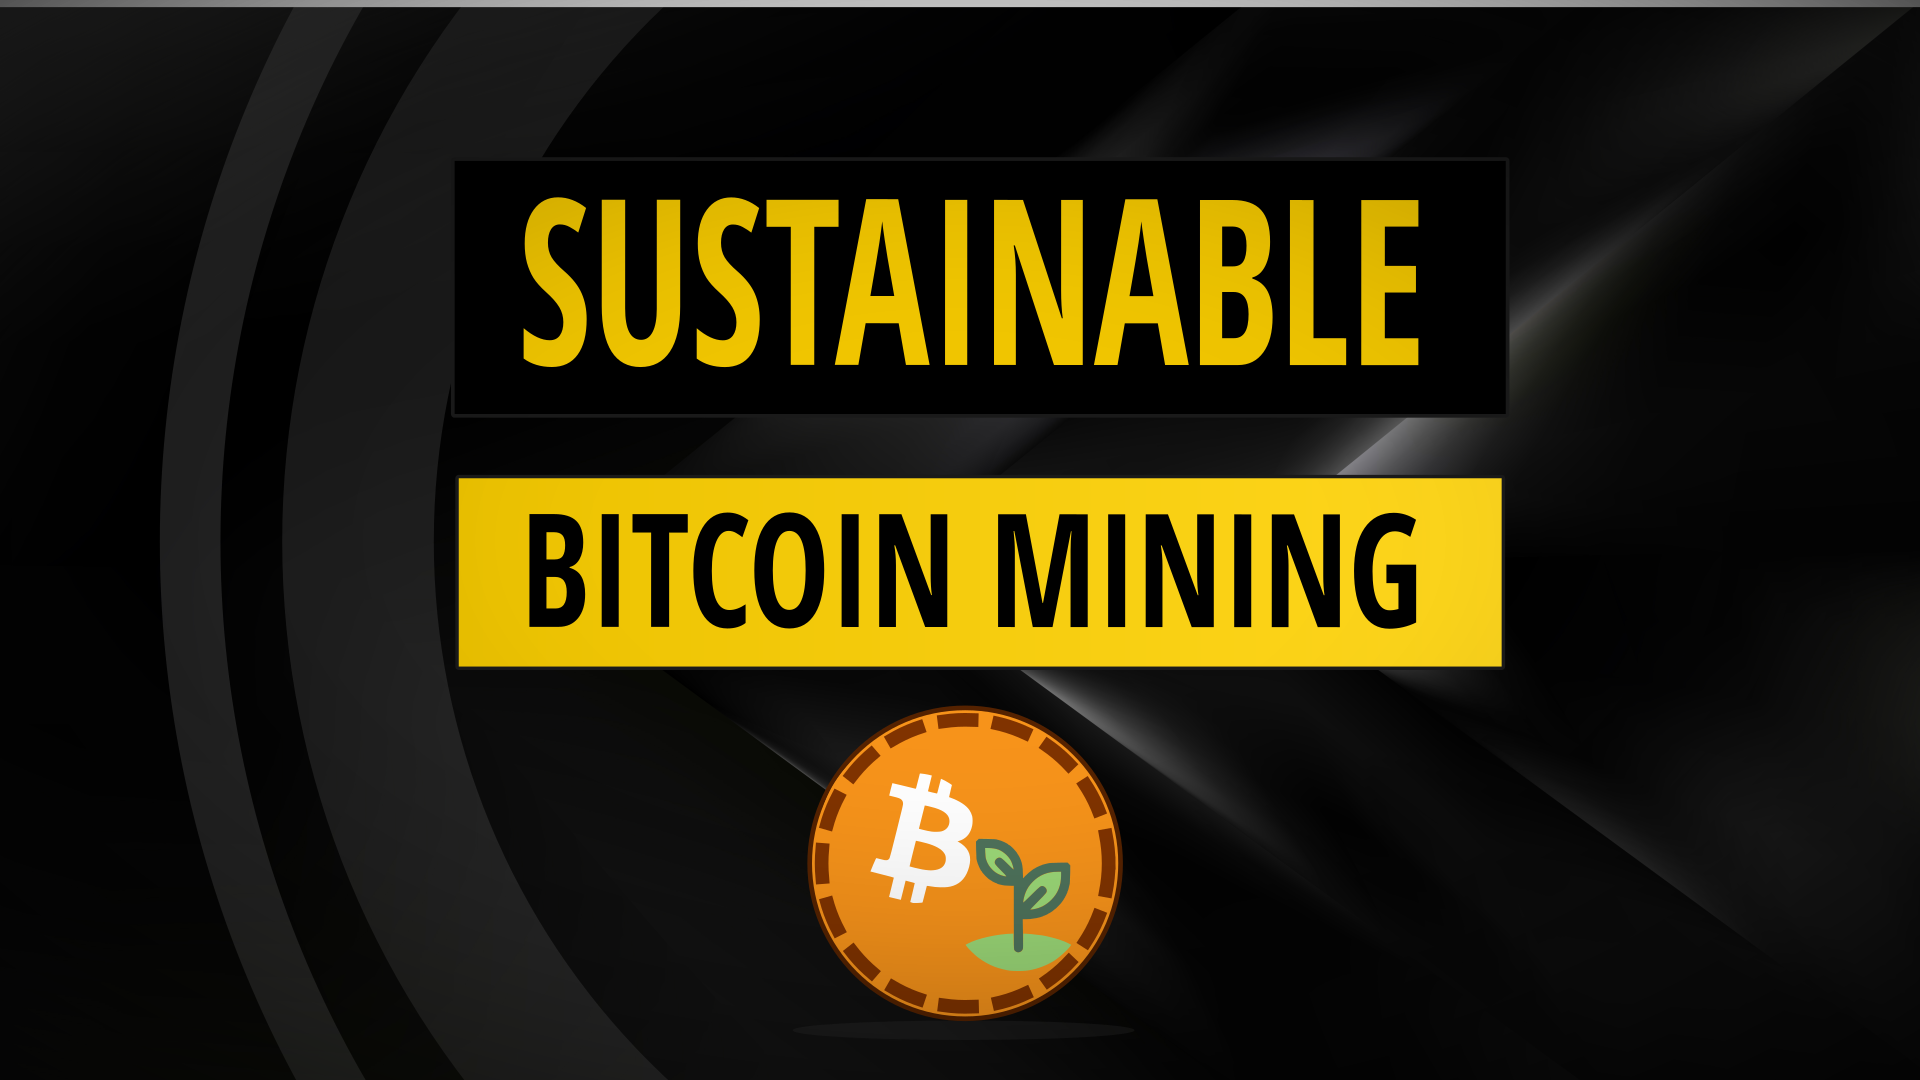 Sustainable bitcoin mining